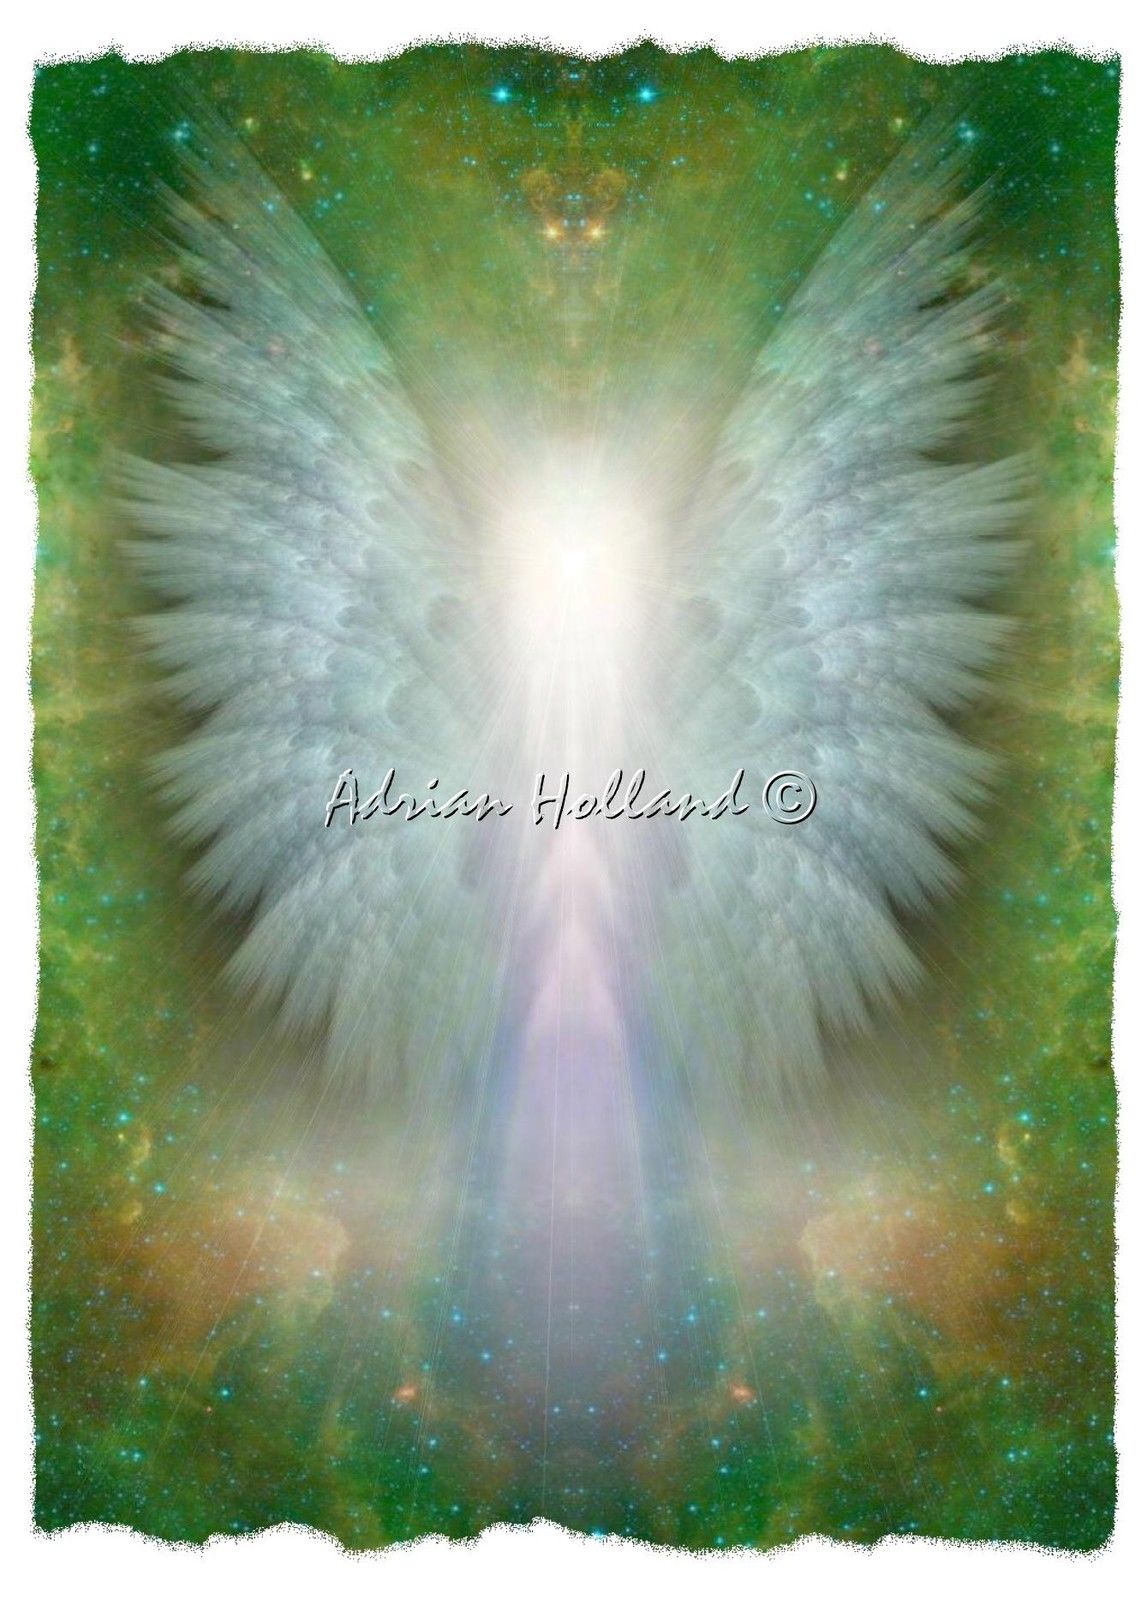 Archangel Raphael Angel Art By Adrian Holland Jpg